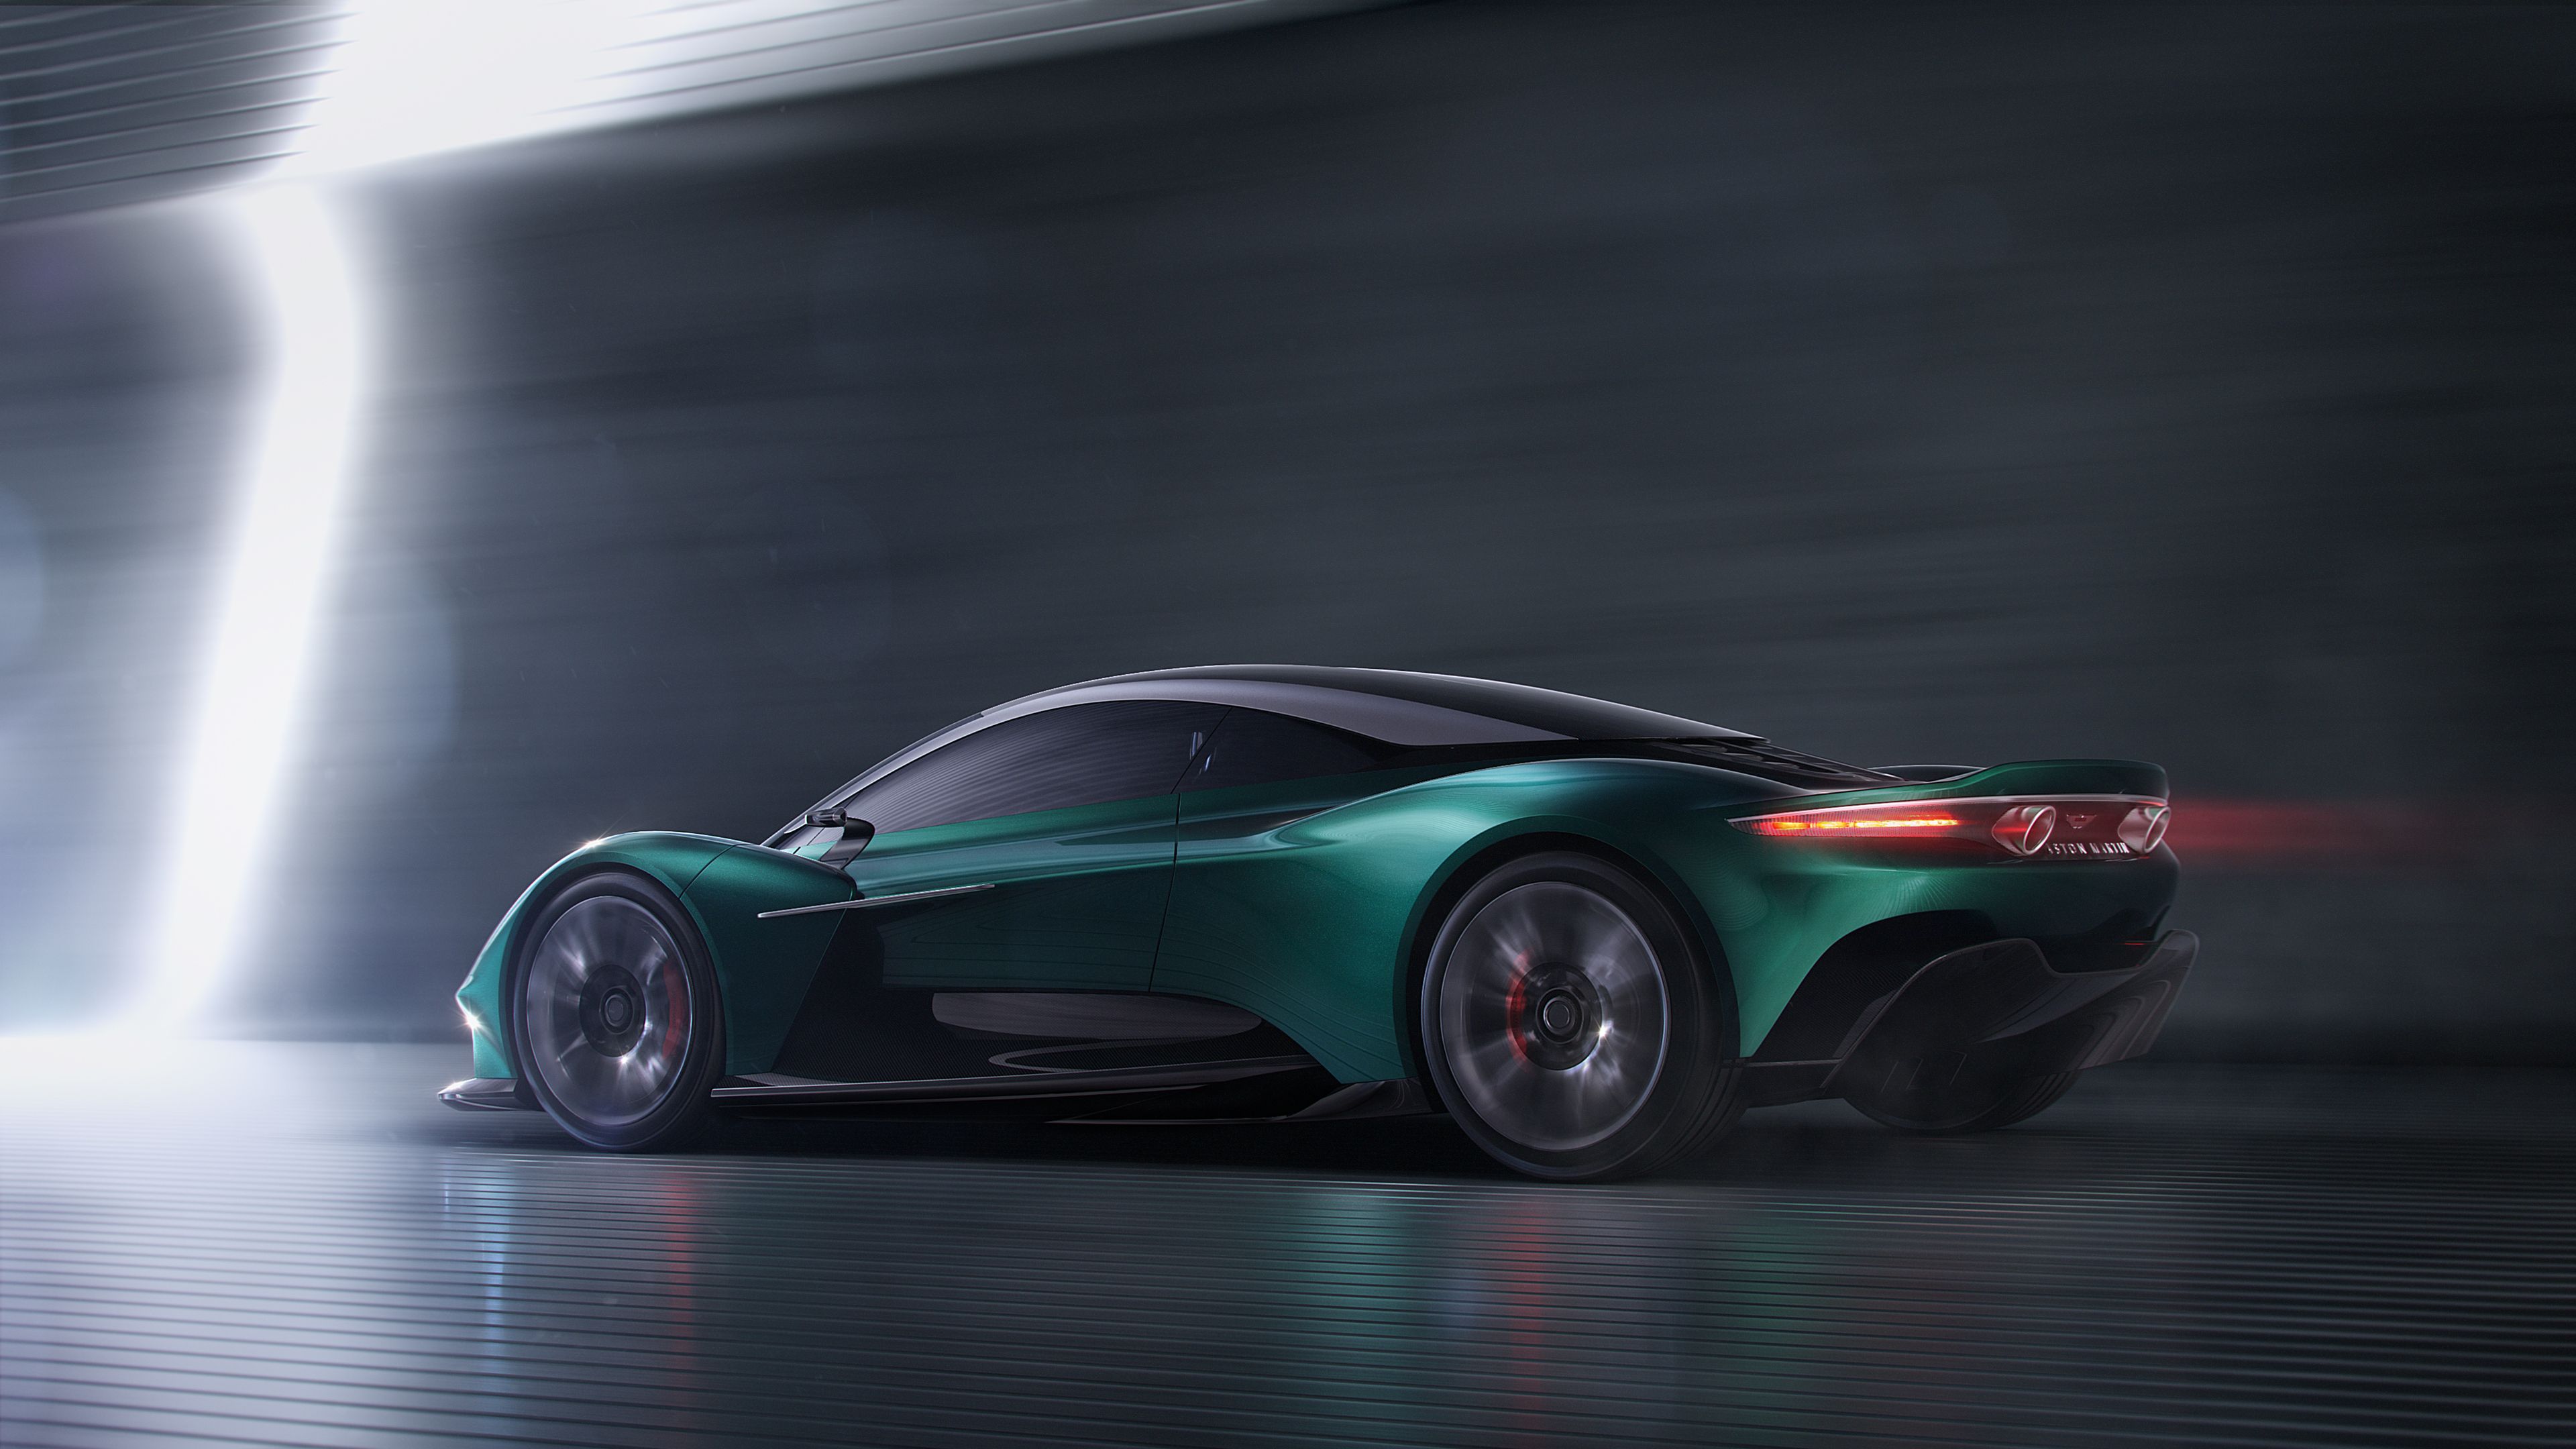 Fondo de pantalla 4k Aston Martin Vanquish Vision Concept 2019 Vista trasera 4k